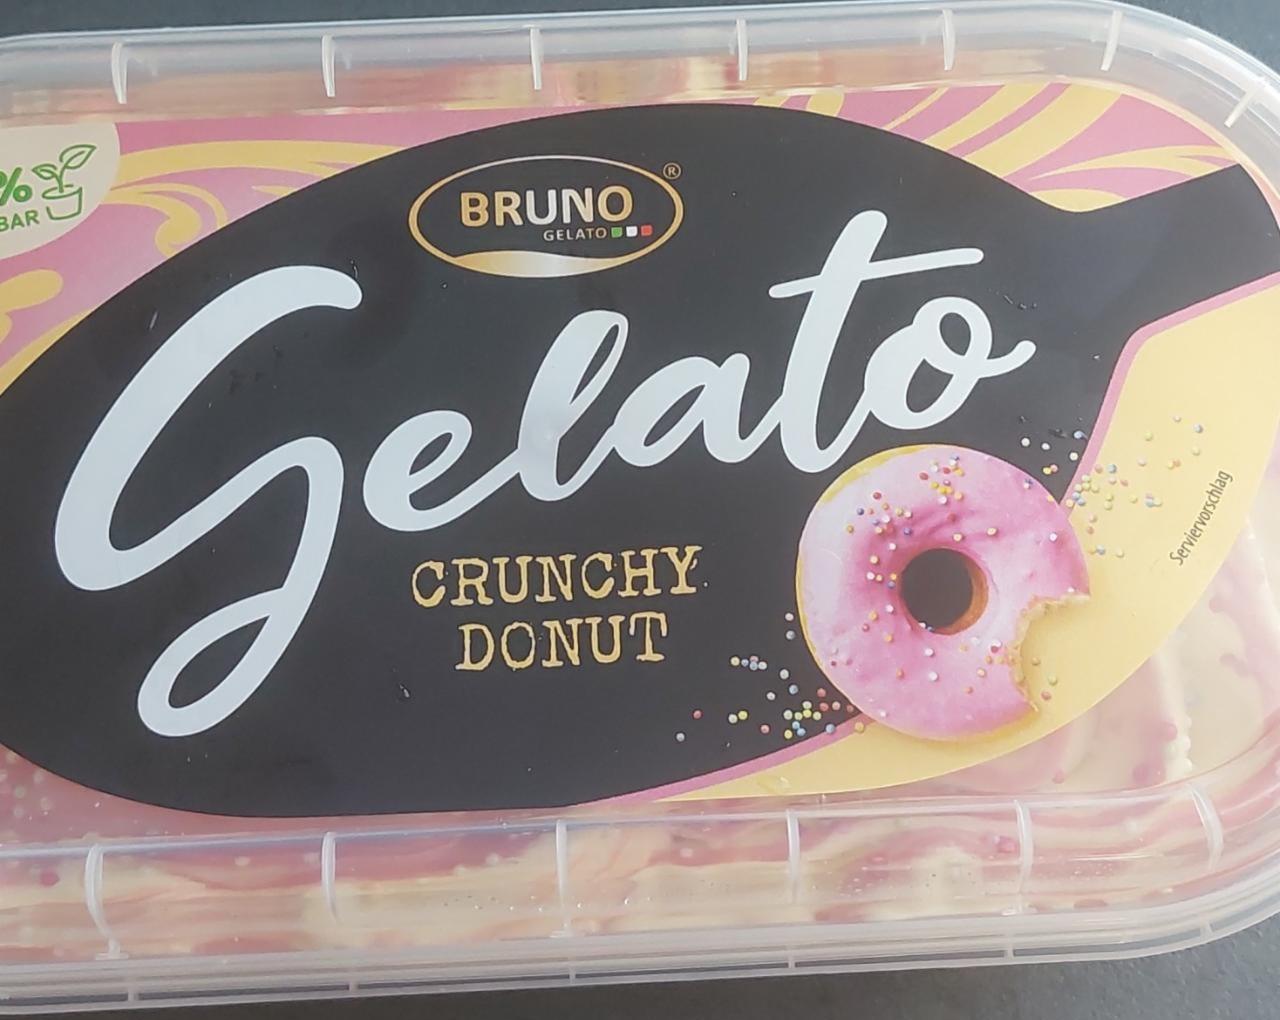 Fotografie - Gelato crunchy donut Bruno